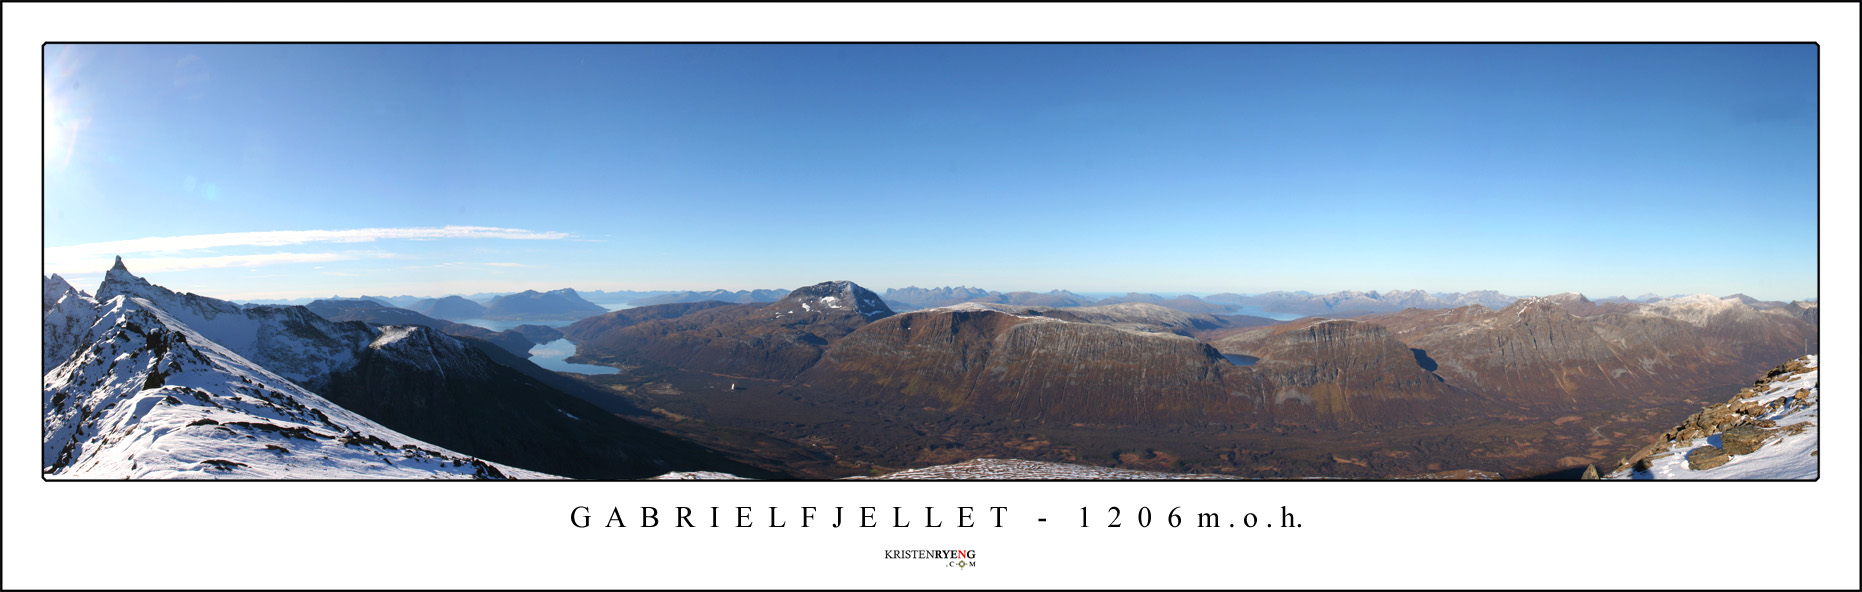 Gabrielfjellet3.jpg - Utsikt mot vest fra Gabrielfjellet. Hamperokken (1404 moh) helt ute til venstre. Dernest følger Ramfjorden, Tromsdalstinden og fjellmassivet på motsatt side av Breivikeidet. Kvaløya og Ringvassøya i bakgrunnen.